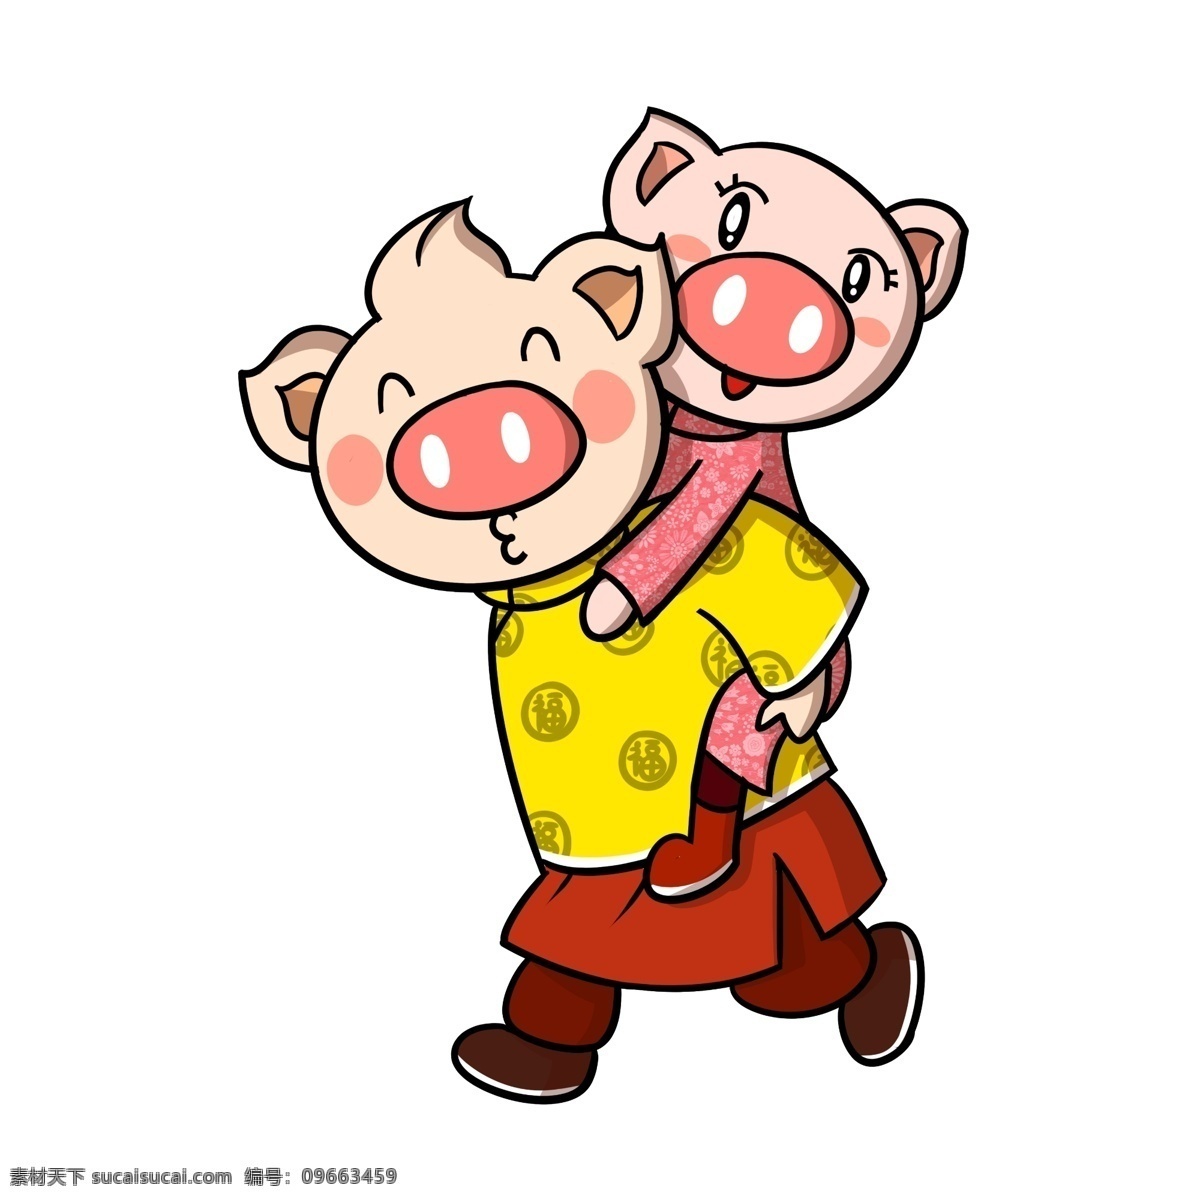 卡通 新年 猪年 小 猪 奔跑 透明 底 小猪 新年快乐 春节 庆祝 新年小猪 2019 卡通猪年 卡通小猪 新年卡通 猪年卡通